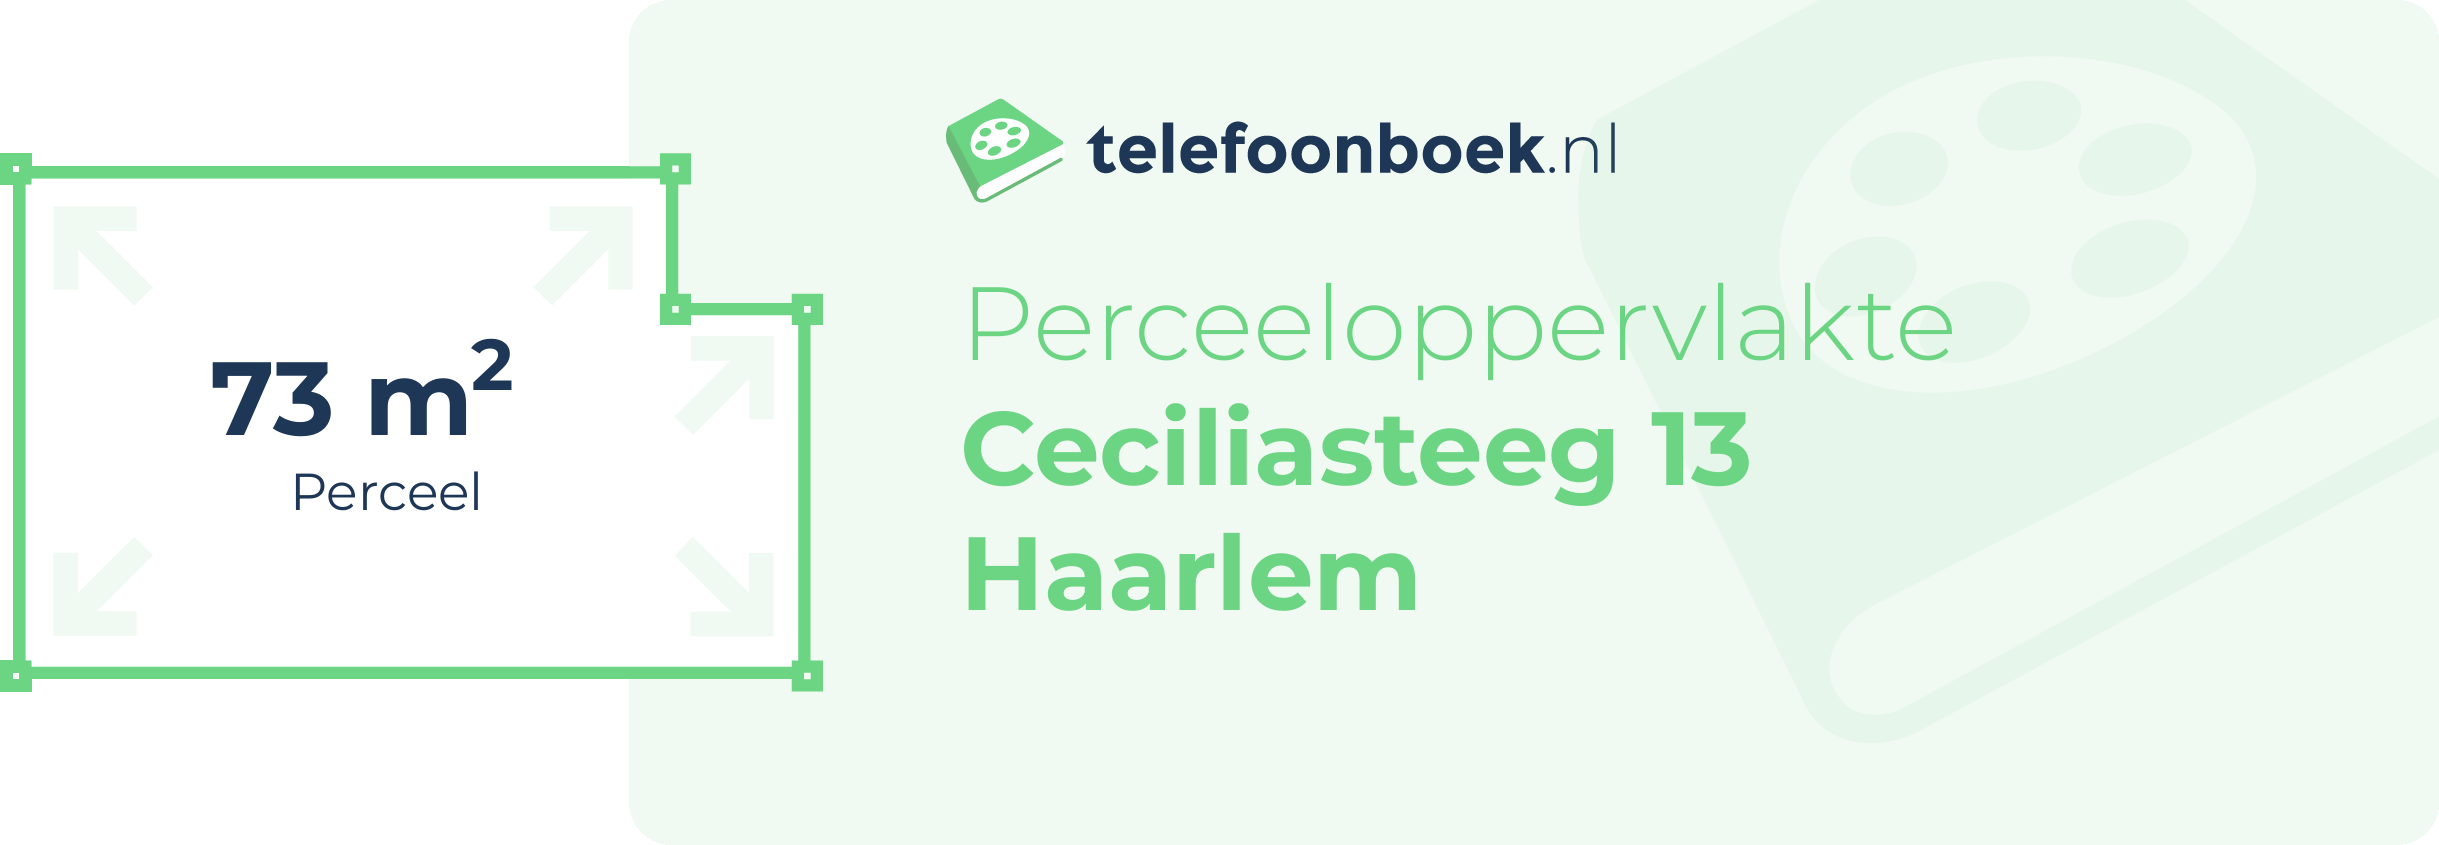 Perceeloppervlakte Ceciliasteeg 13 Haarlem